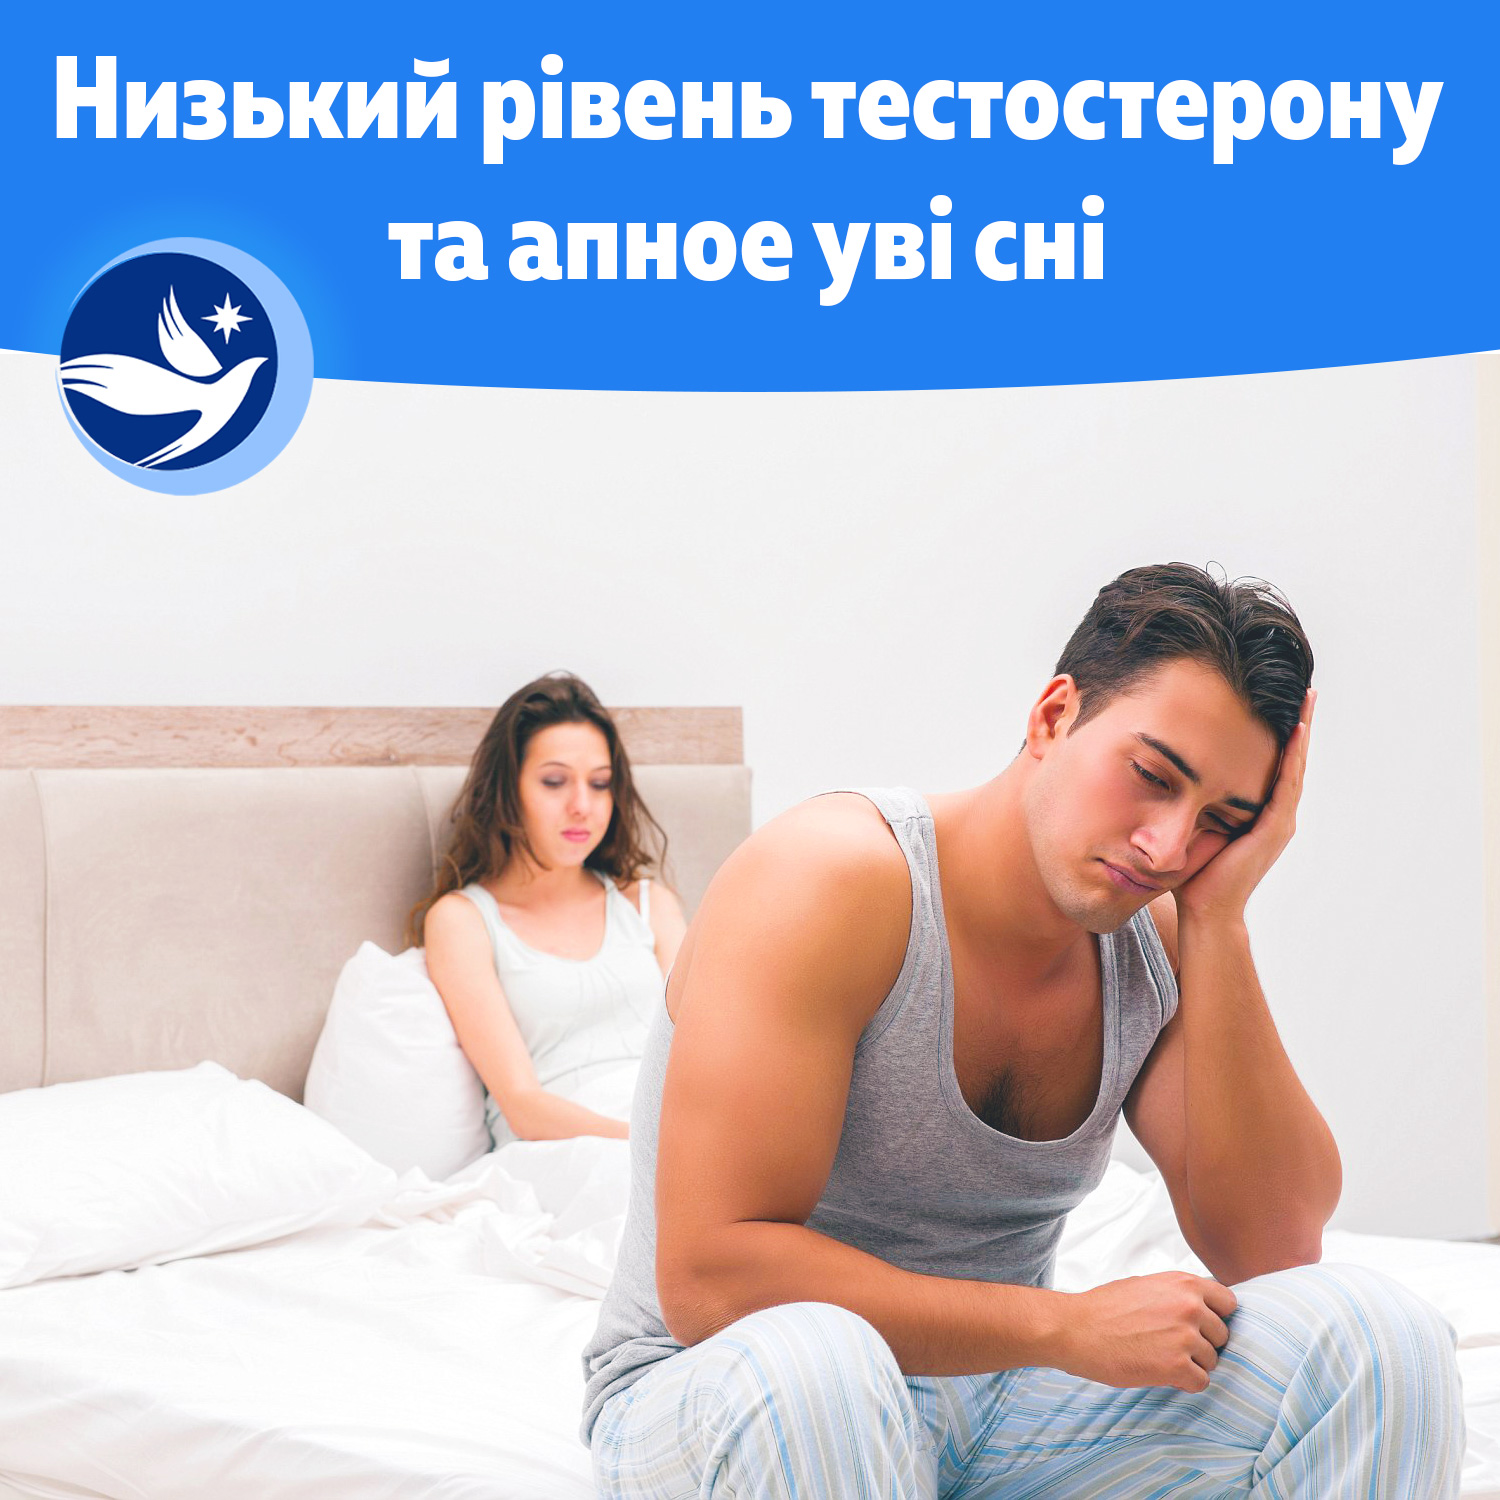 Низкий уровень тестостерона и апноэ во сне, мужчина расстроен в кровати с девушкой